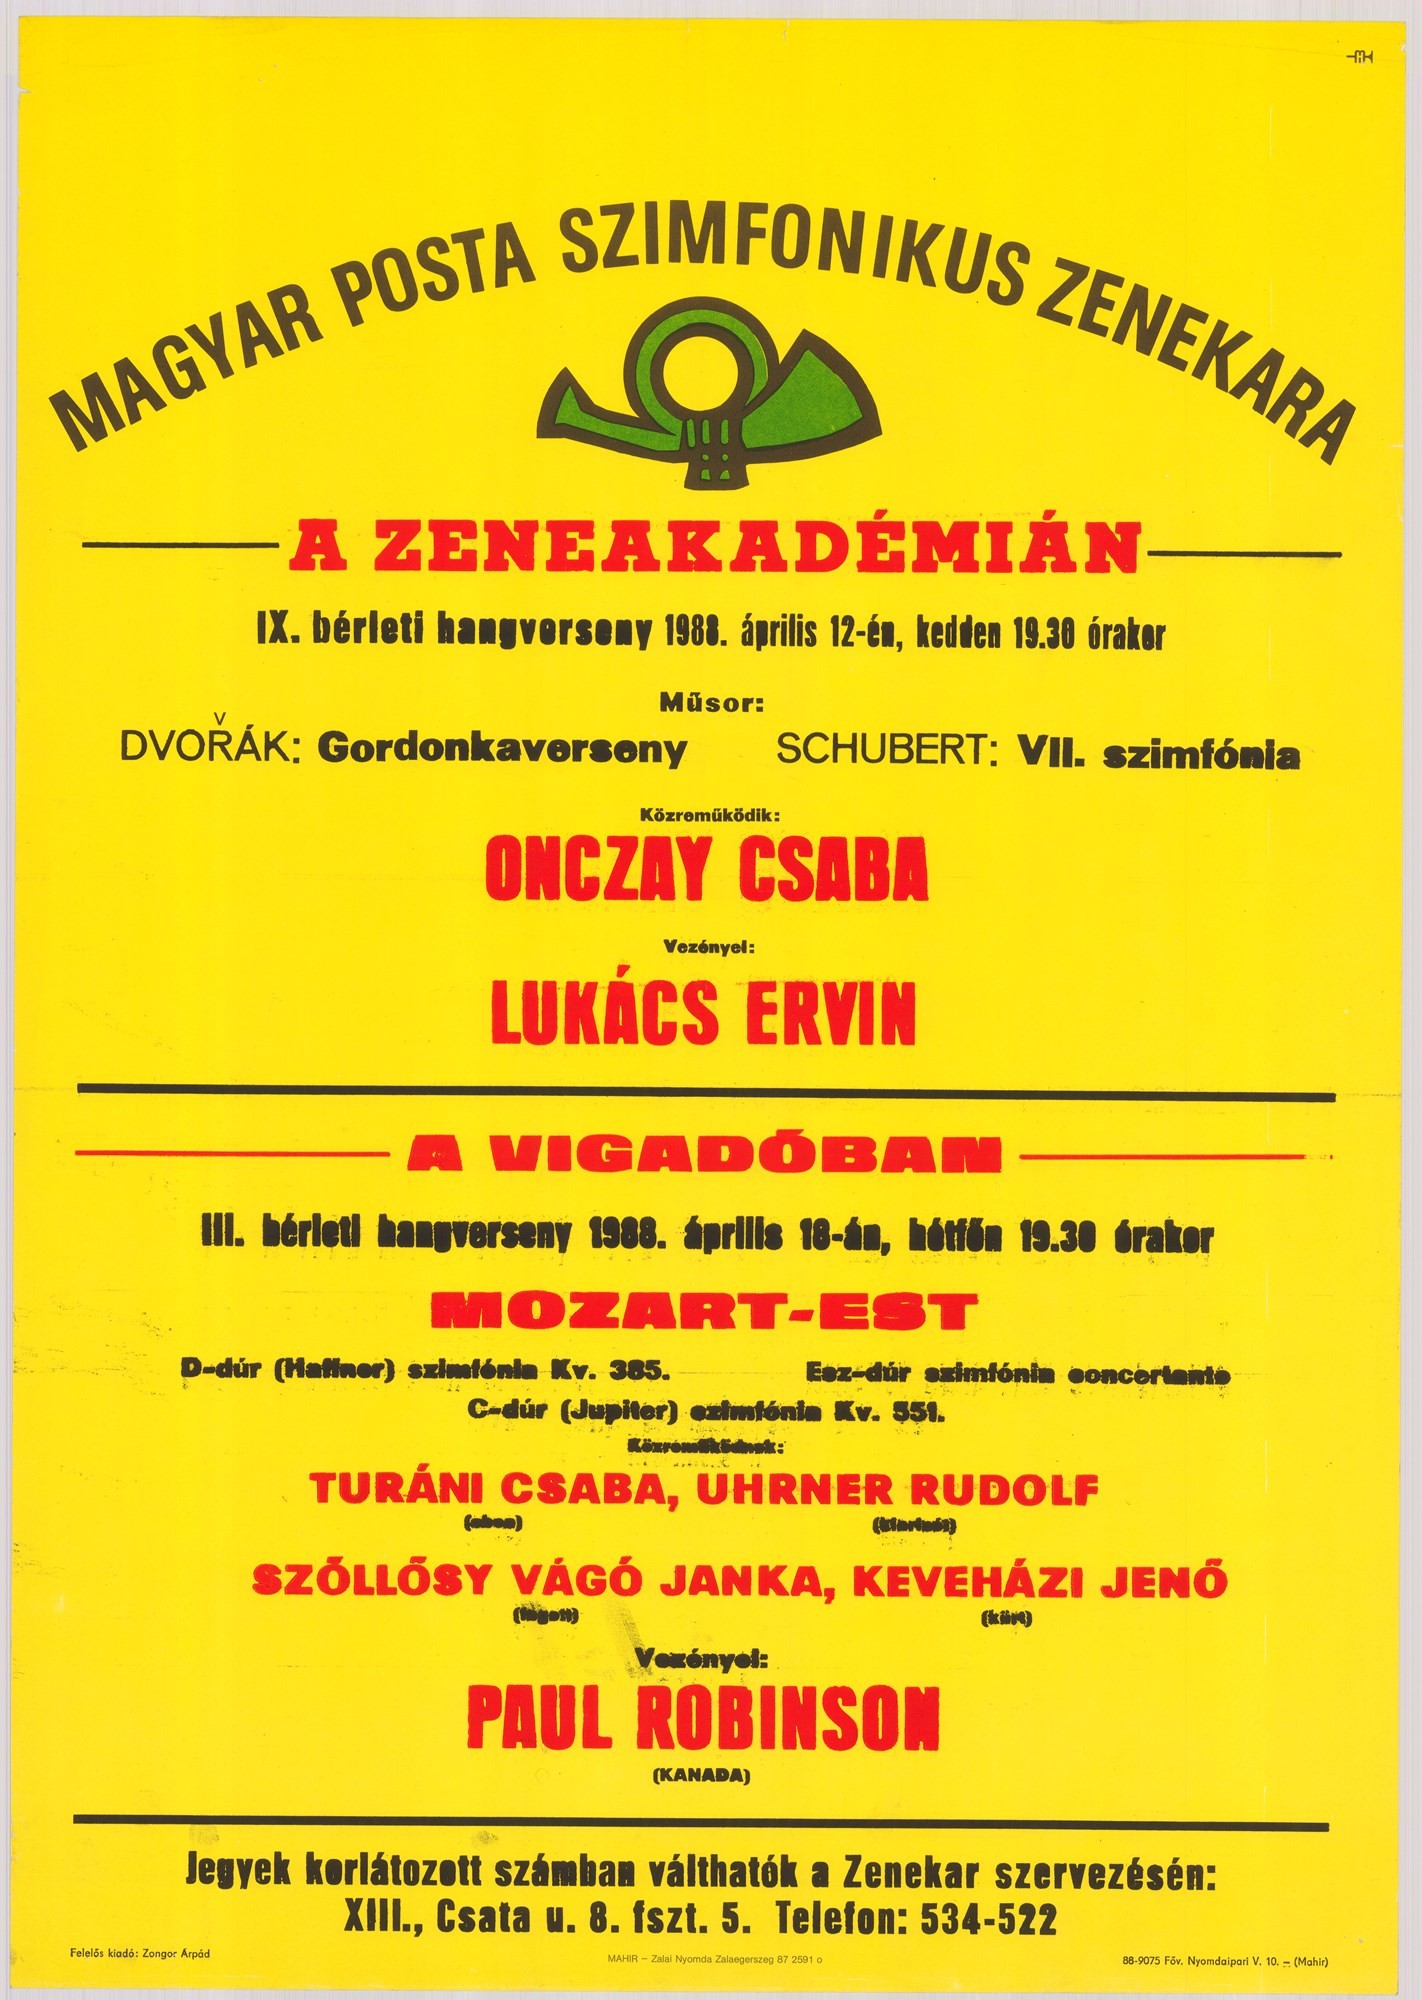 Plakát - Postás Szimfonikus Zenekar a Vigadóban és a Zeneakadémián, 1988 (Postamúzeum CC BY-NC-SA)